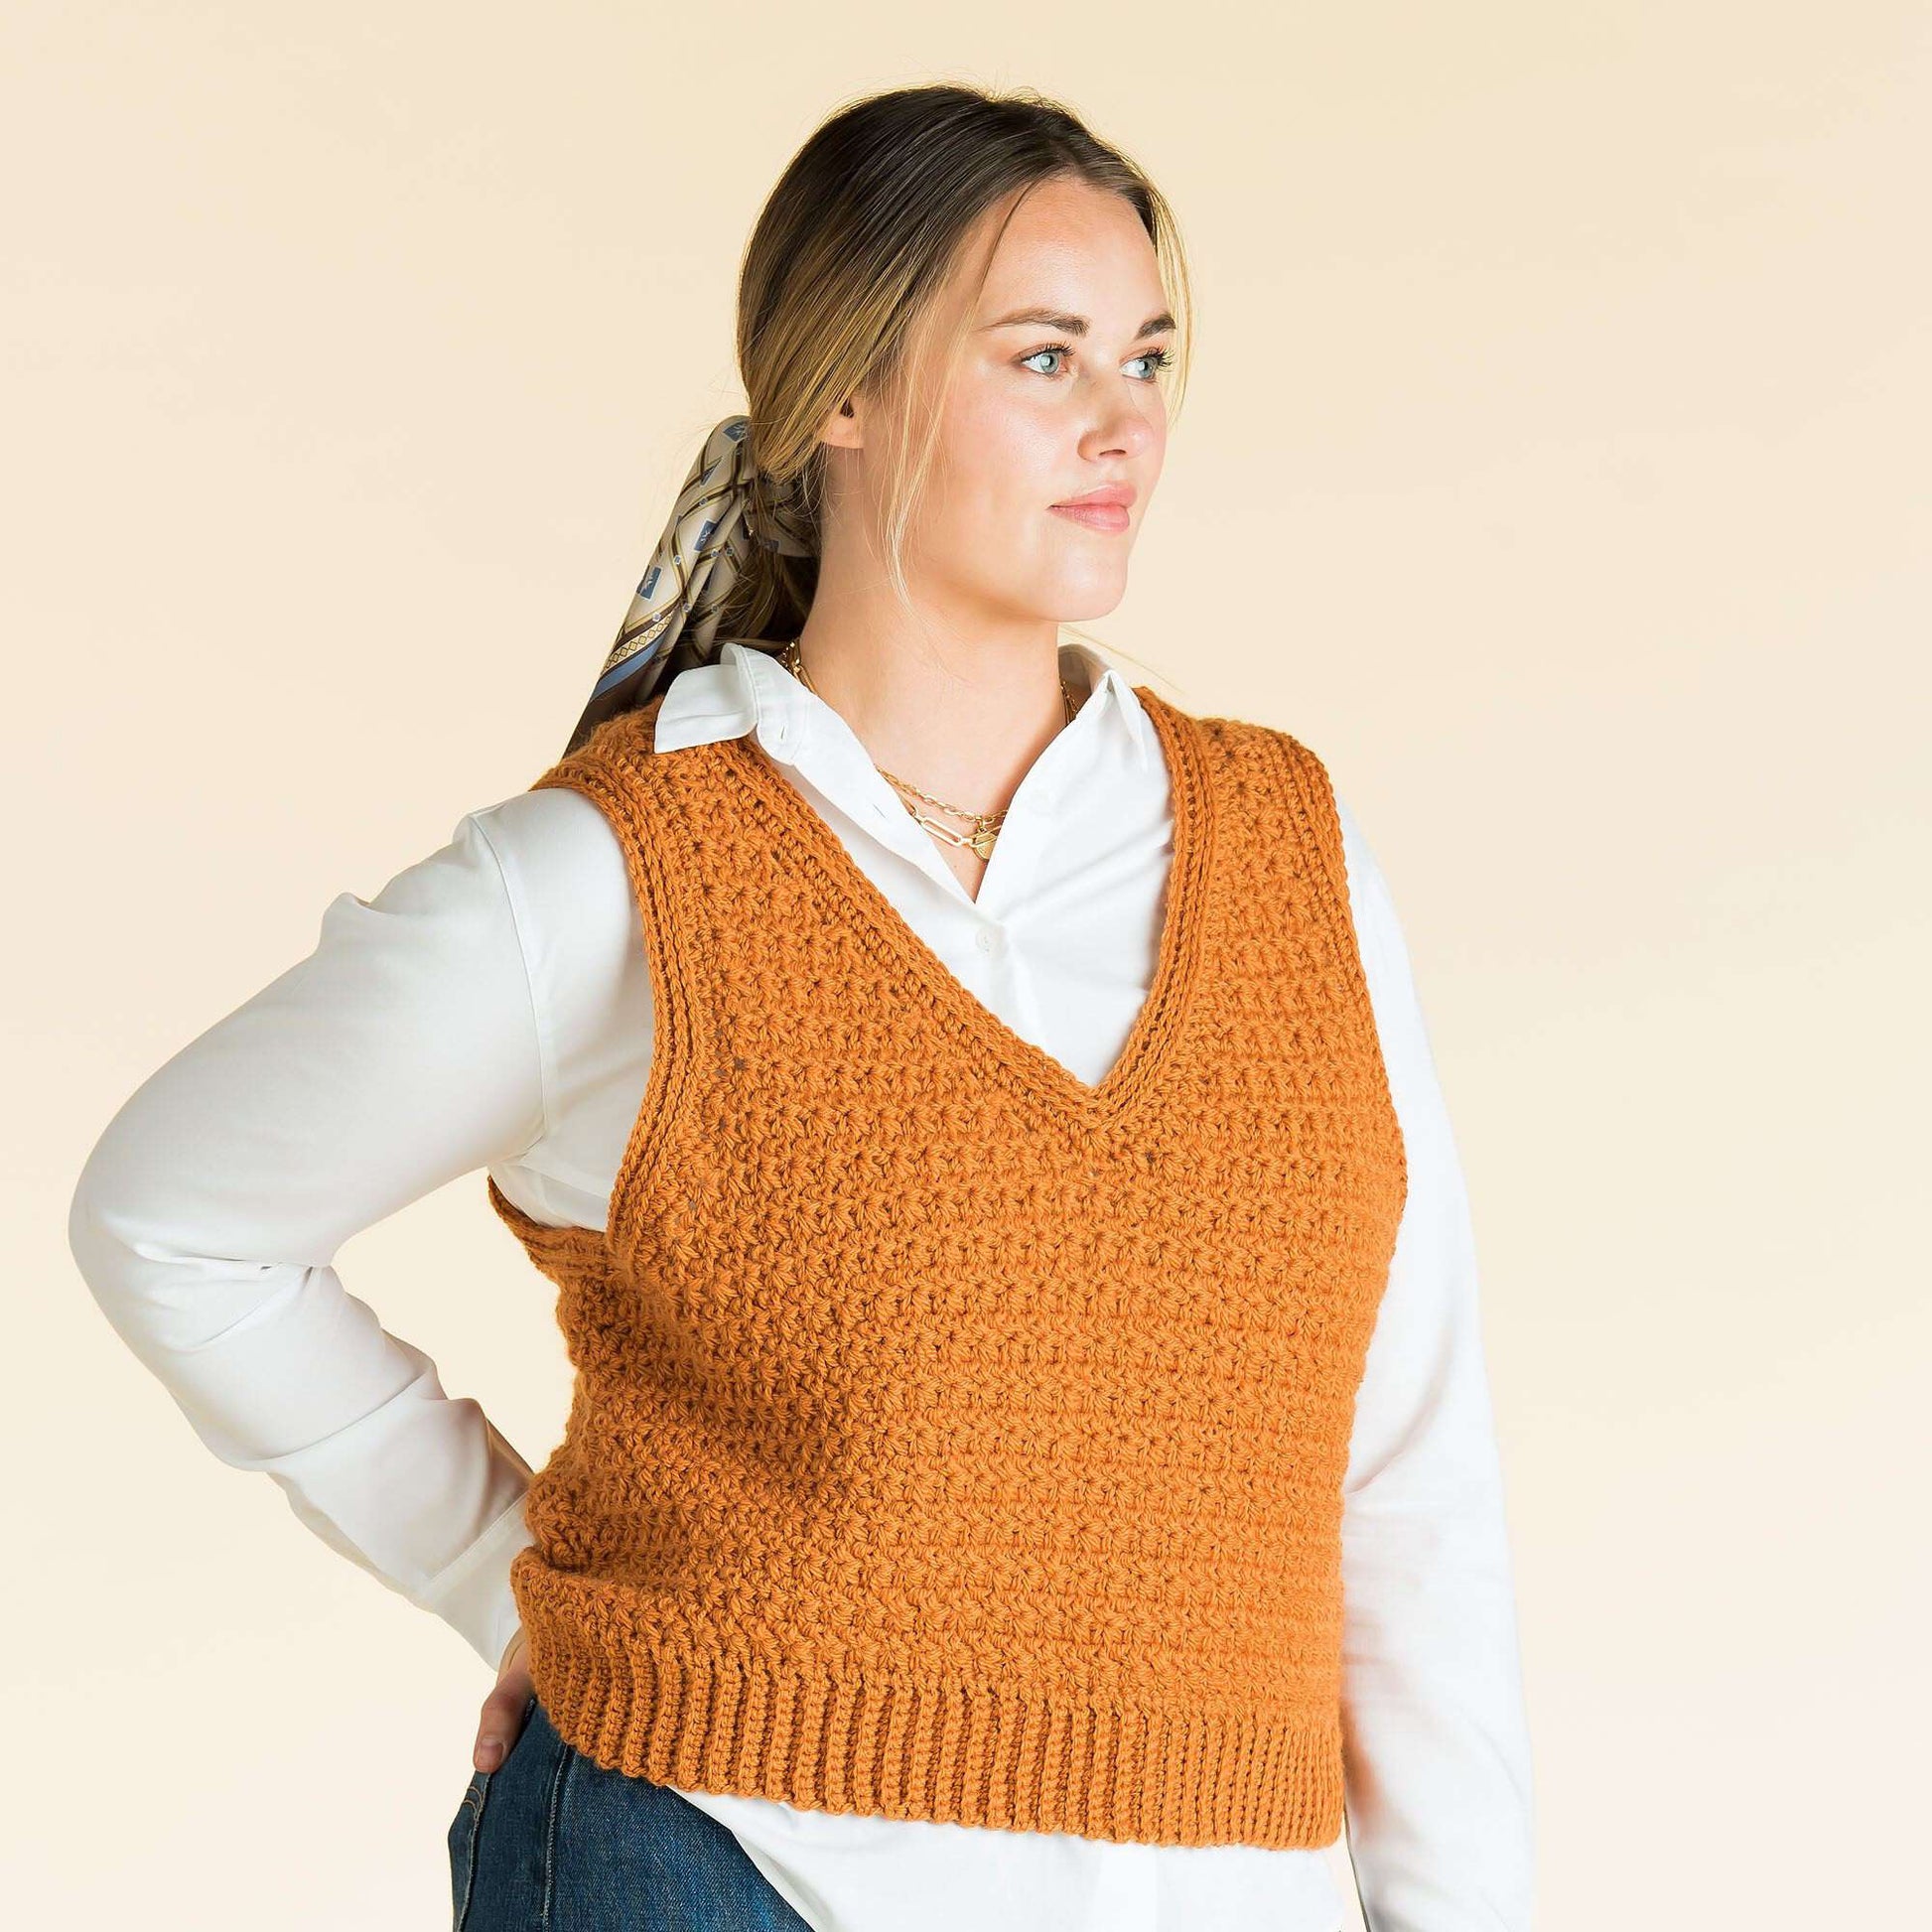 20 Free Crochet Vest Patterns for All Seasons - Sarah Maker